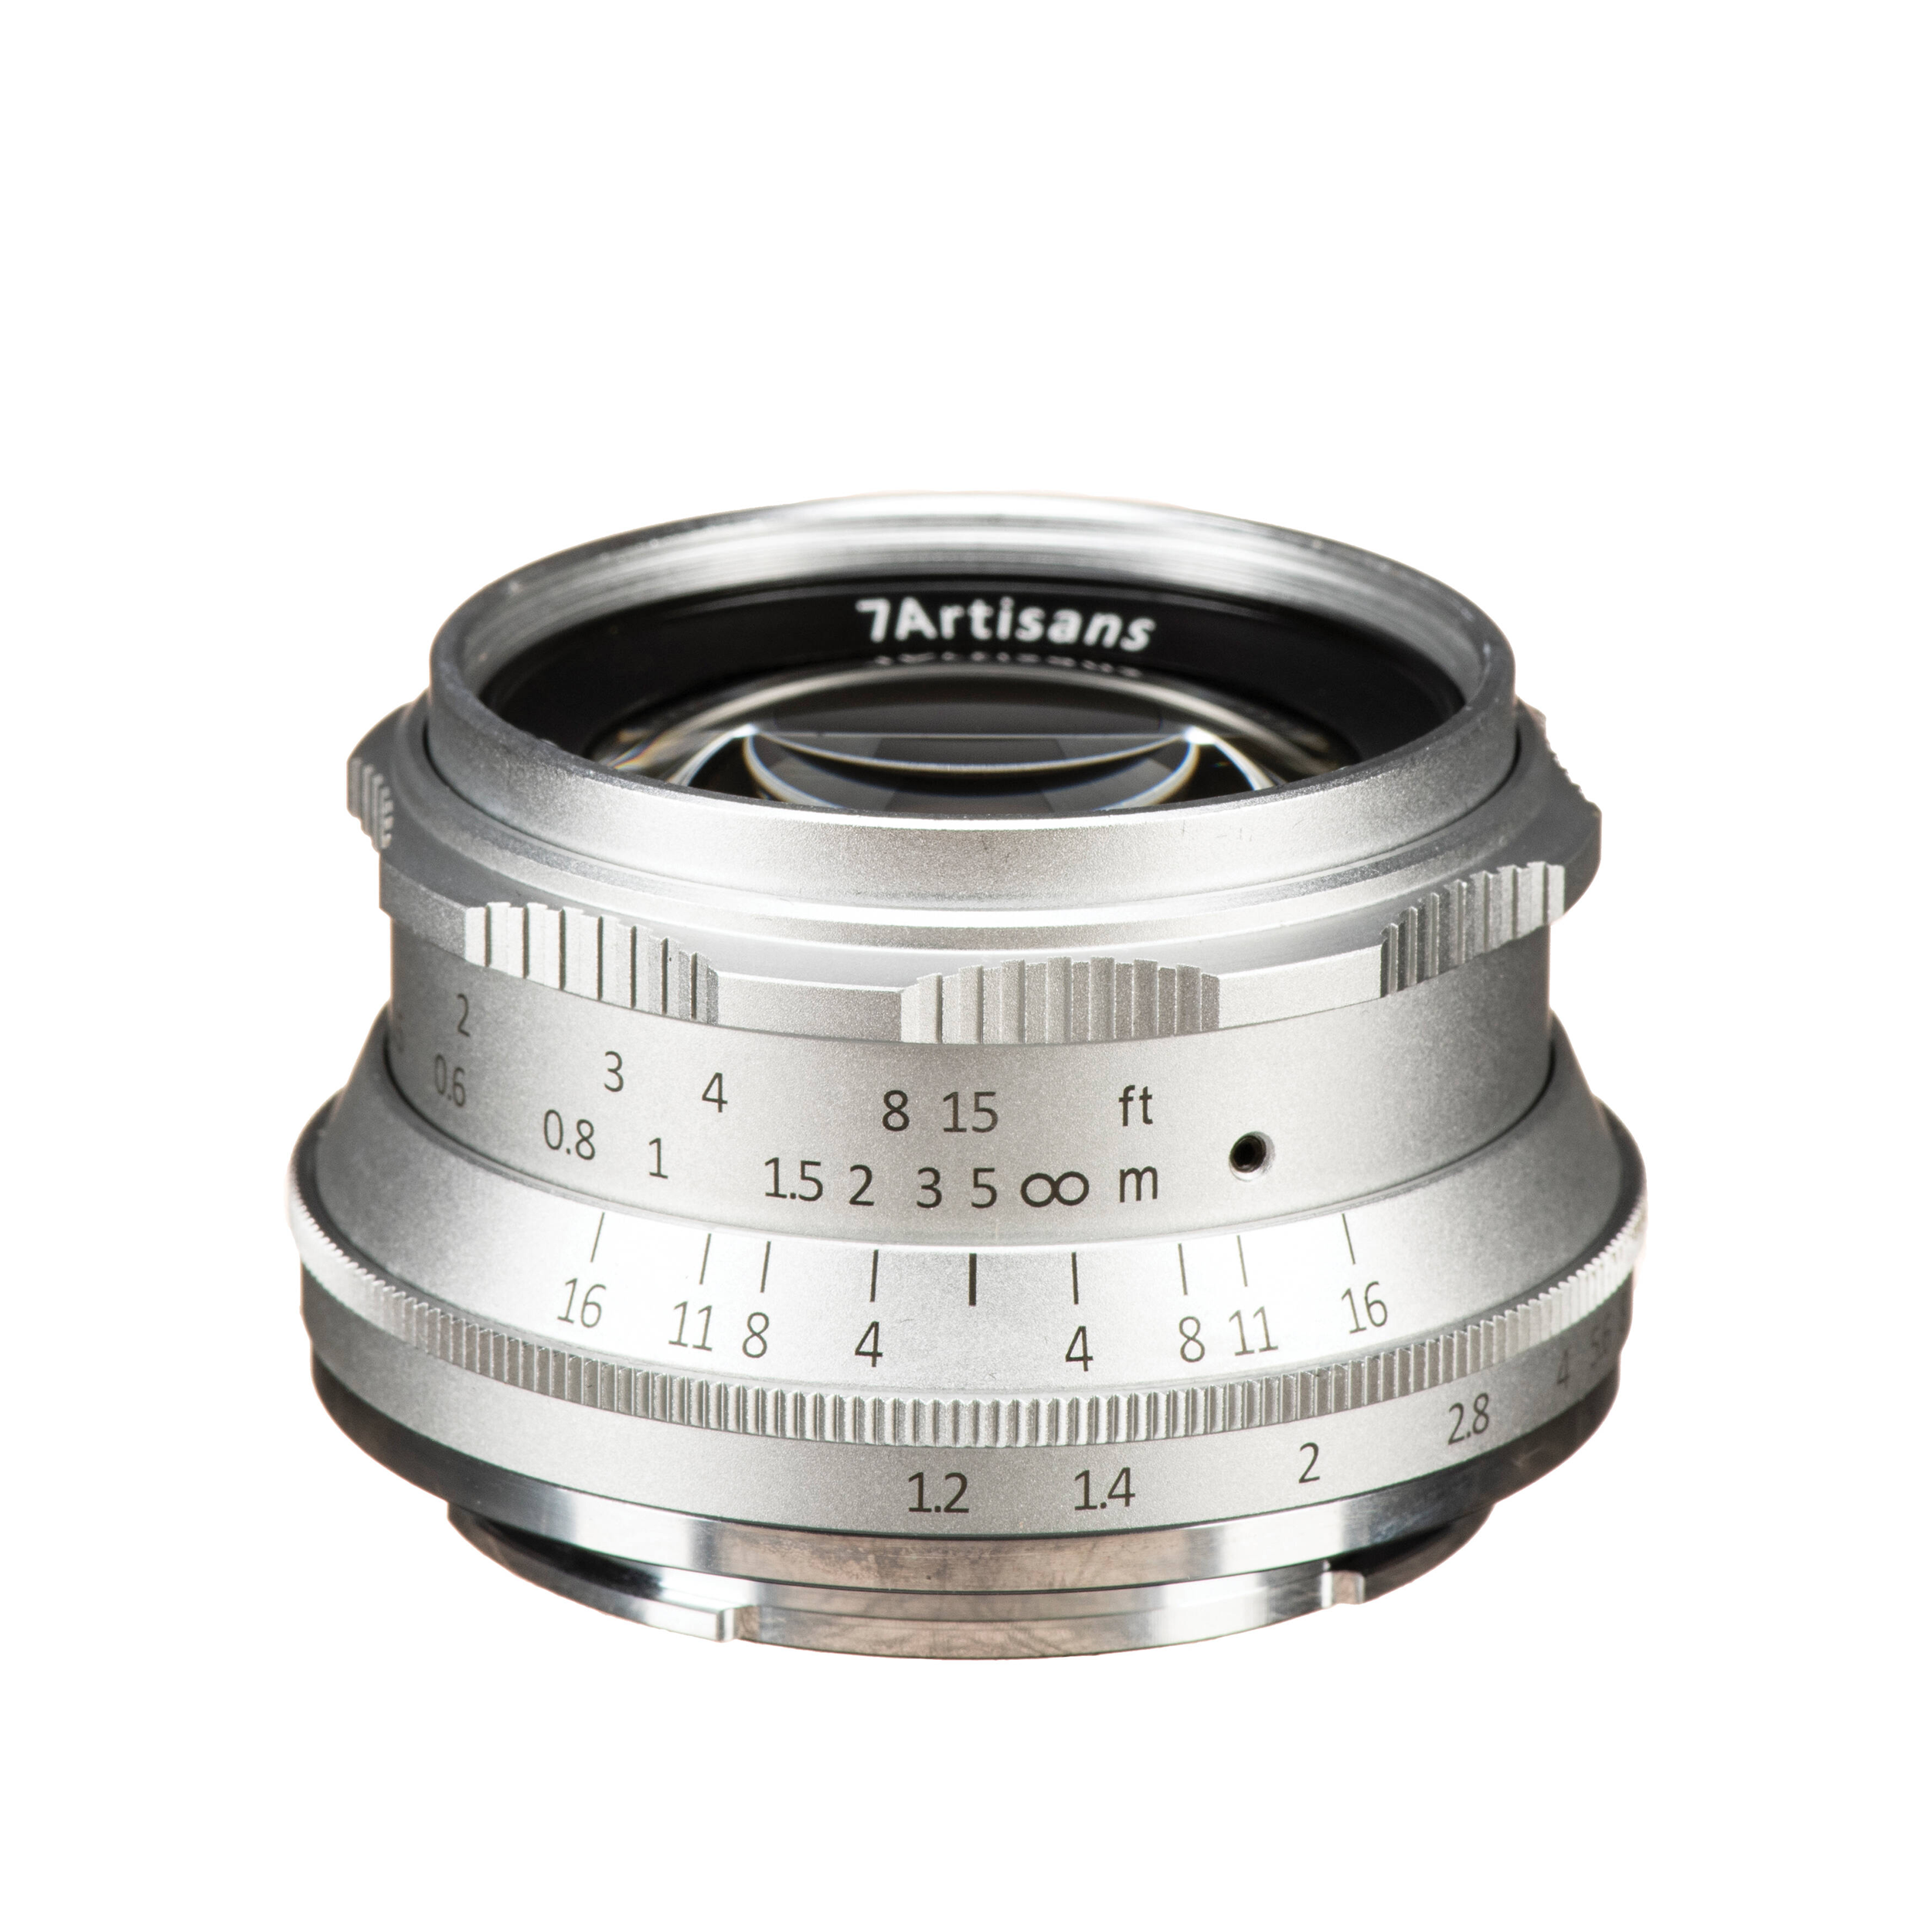 7artisans Photoelectric 35mm f/1.2 Lens for Sony E Mount